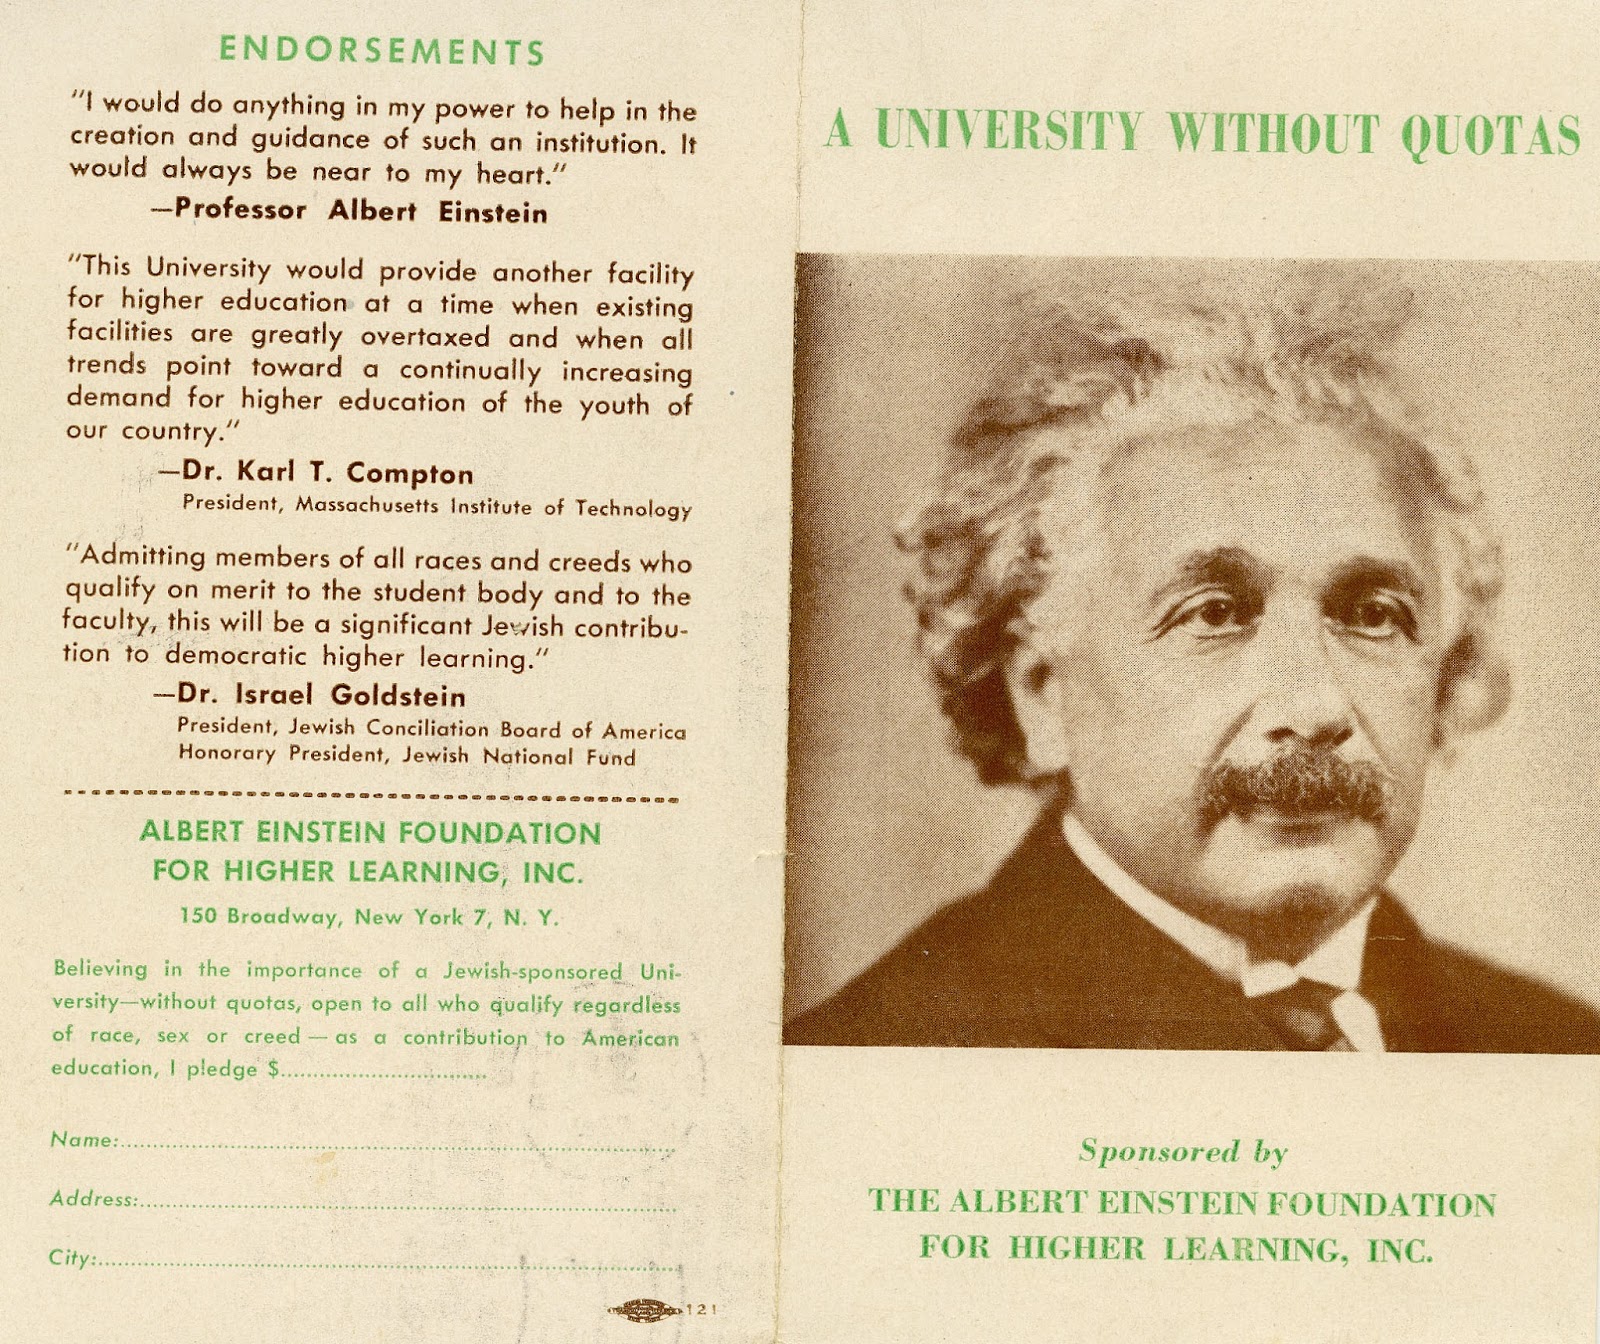 Albert Einstein Foundation Brochure, c.a. 1947 with photo of Albert Einstein on the cover